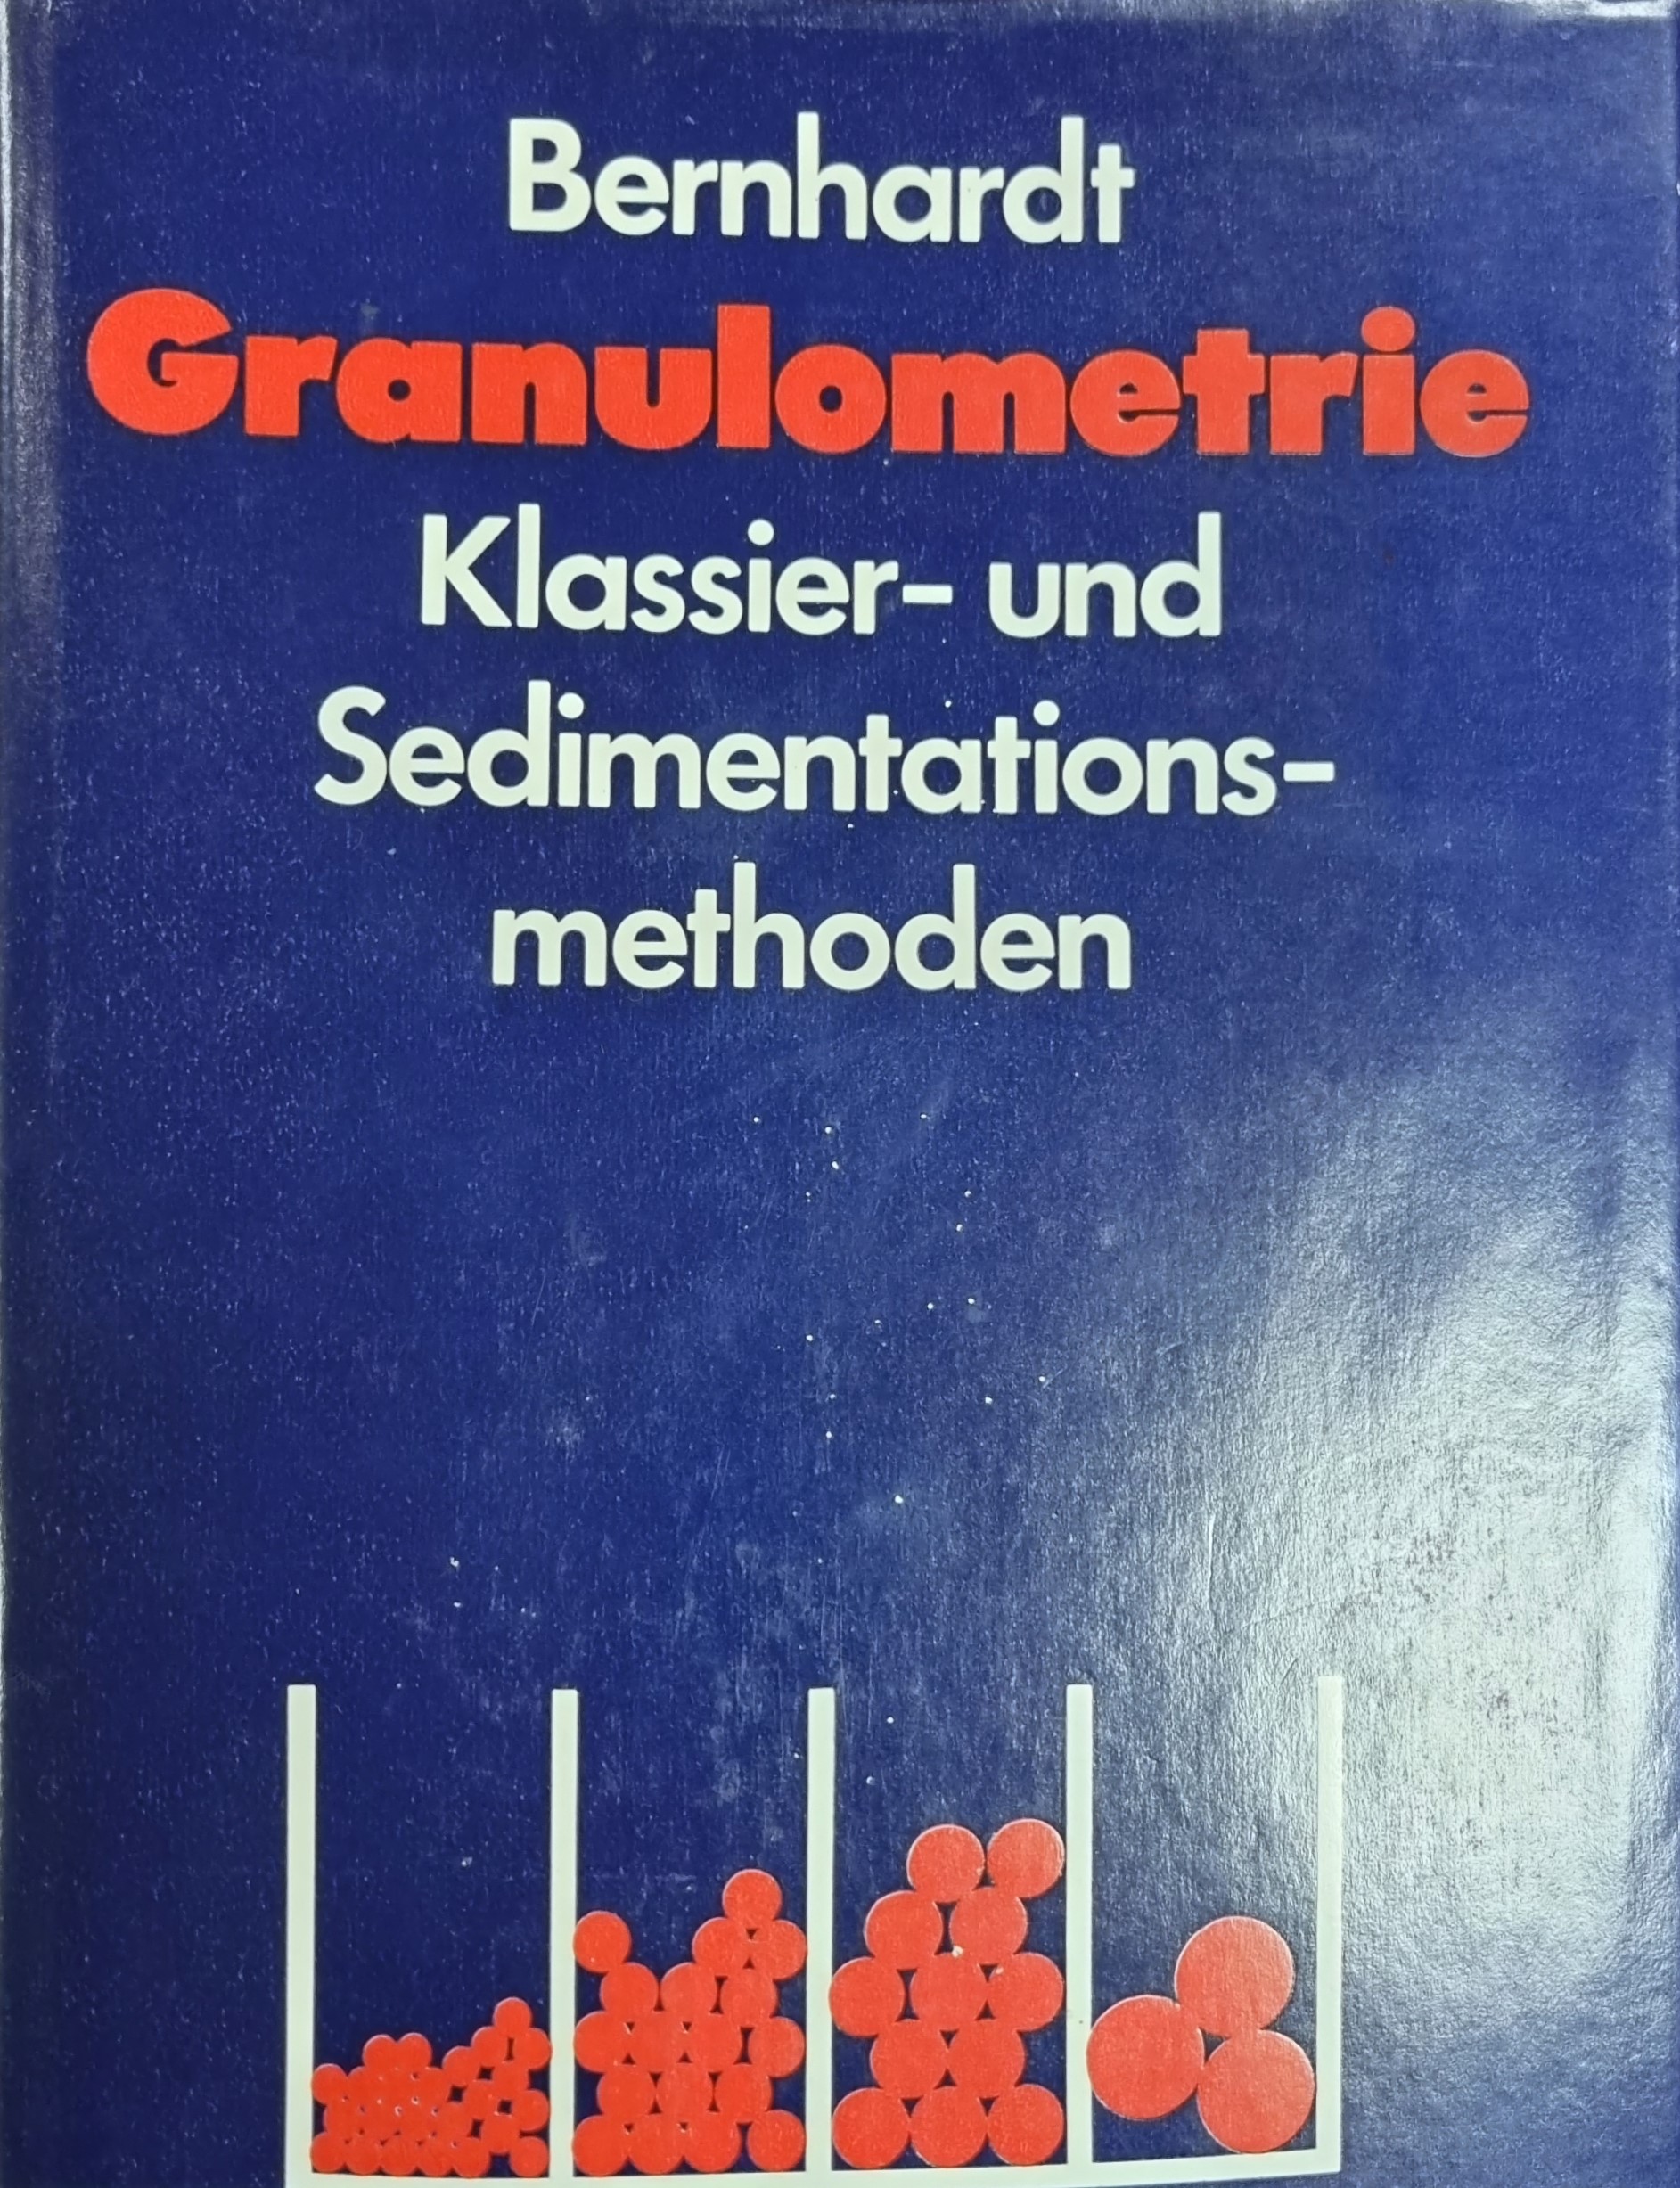 Granulometrie - Klassier- und Sedimentationsmethoden , Mit 151 Bildern, 30 Tabellen und 8 Tafeln - Claus Bernhardt